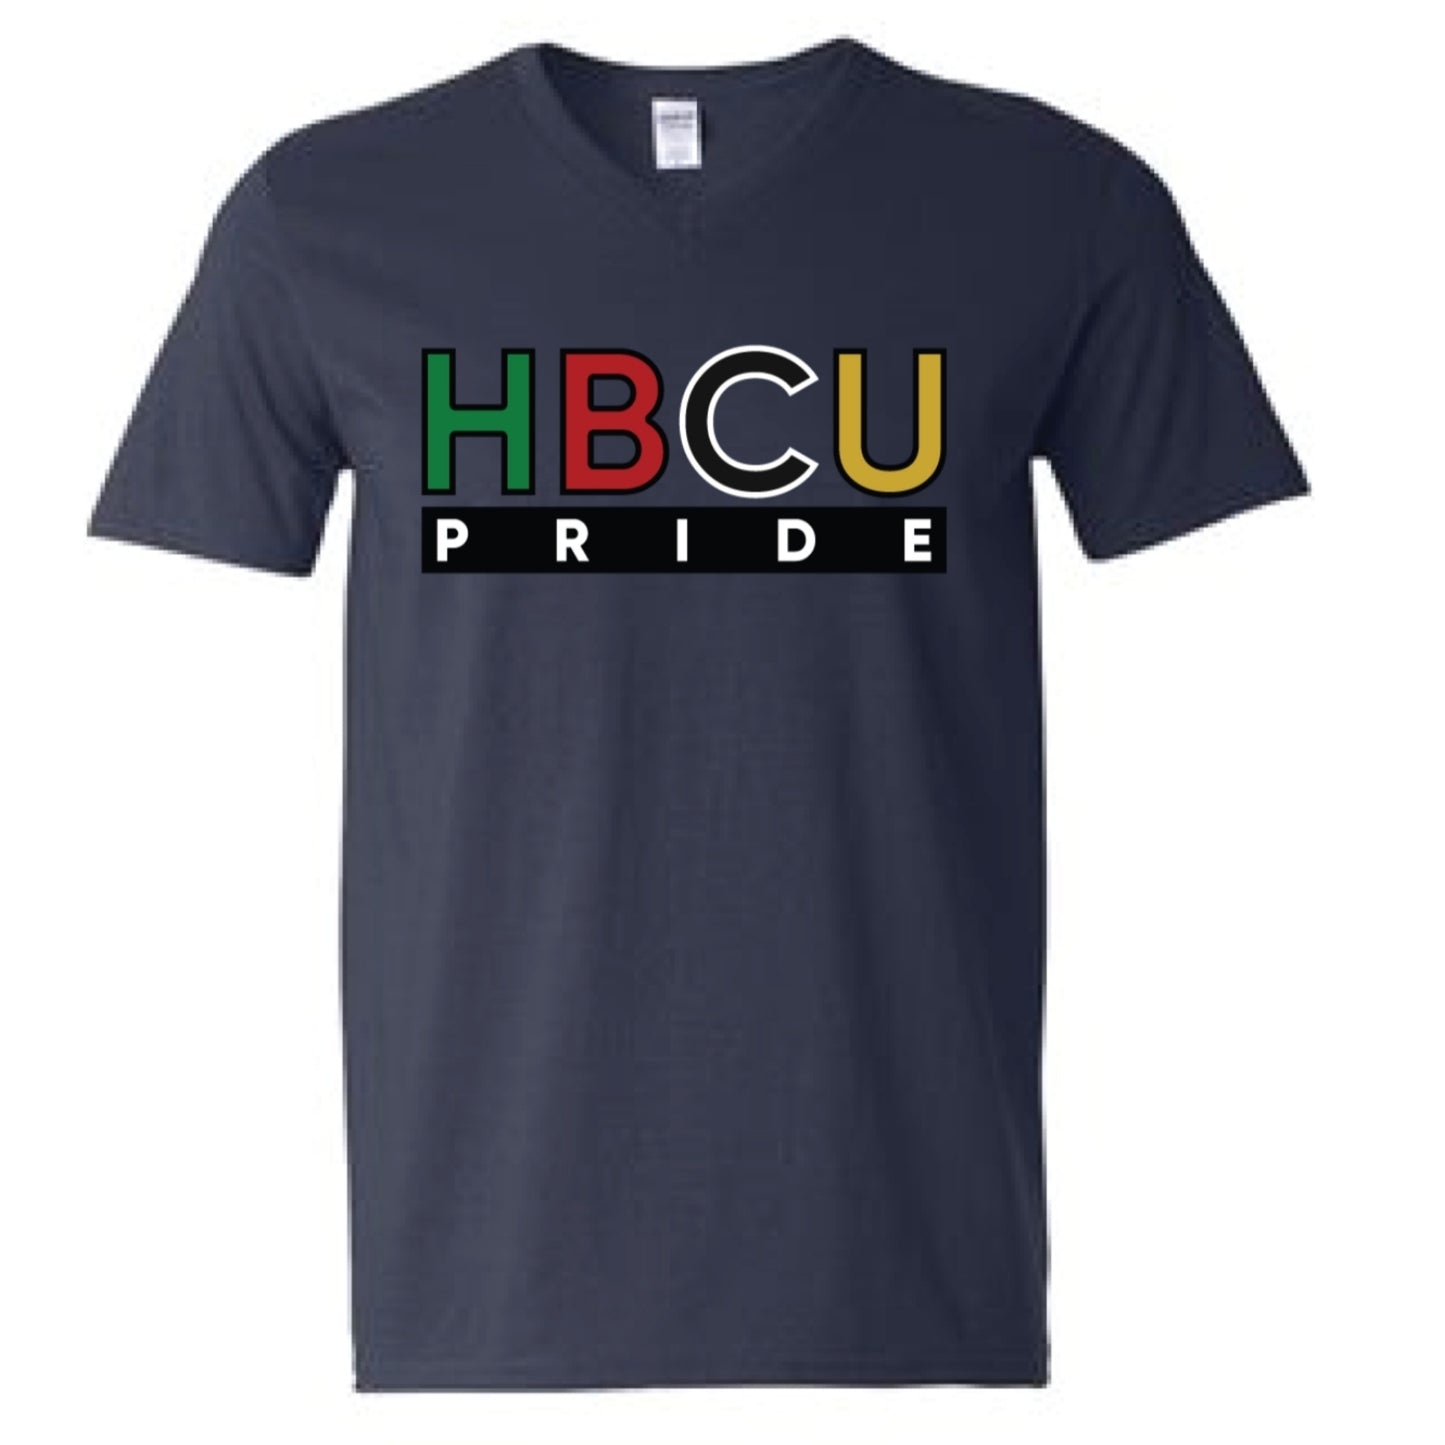 The "Entrepreneur" HBCU Pride Banner Tee in Navy Blue